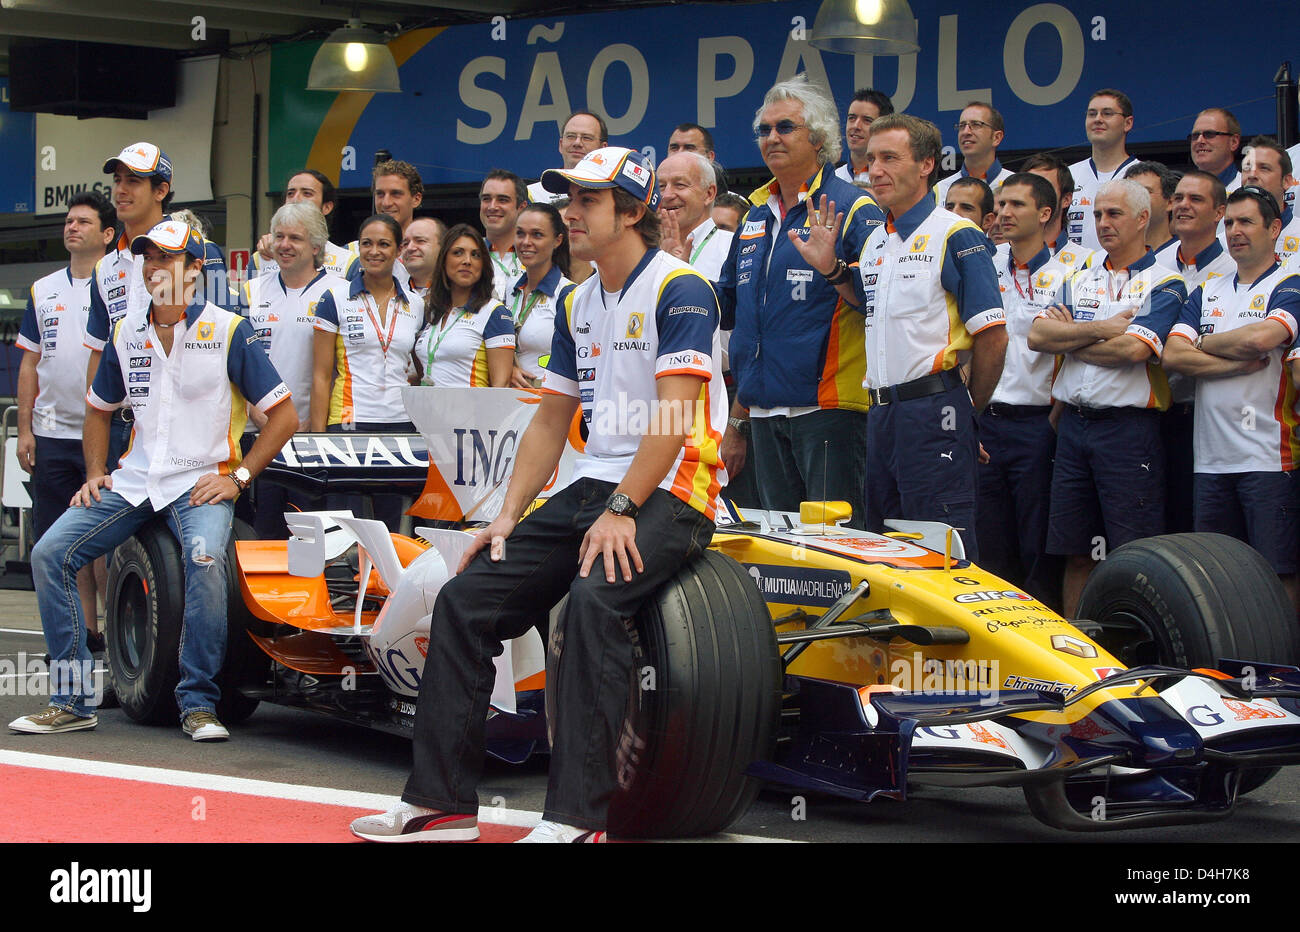 Pilote de Formule 1 espagnol Fernando Alonso (C) de Renault s'assied sur le pneu avant de sa voiture lors d'une photo de l'équipe avant le Grand Prix de Formule 1 du Brésil à la piste de course à Interlagos près de Sao Paulo, Brésil, 02 novembre 2008. Le directeur principal de l'équipe Renault Flavio Briatore italienne se trouve juste derrière lui. Photo : ROLAND WEIHRAUCH Banque D'Images